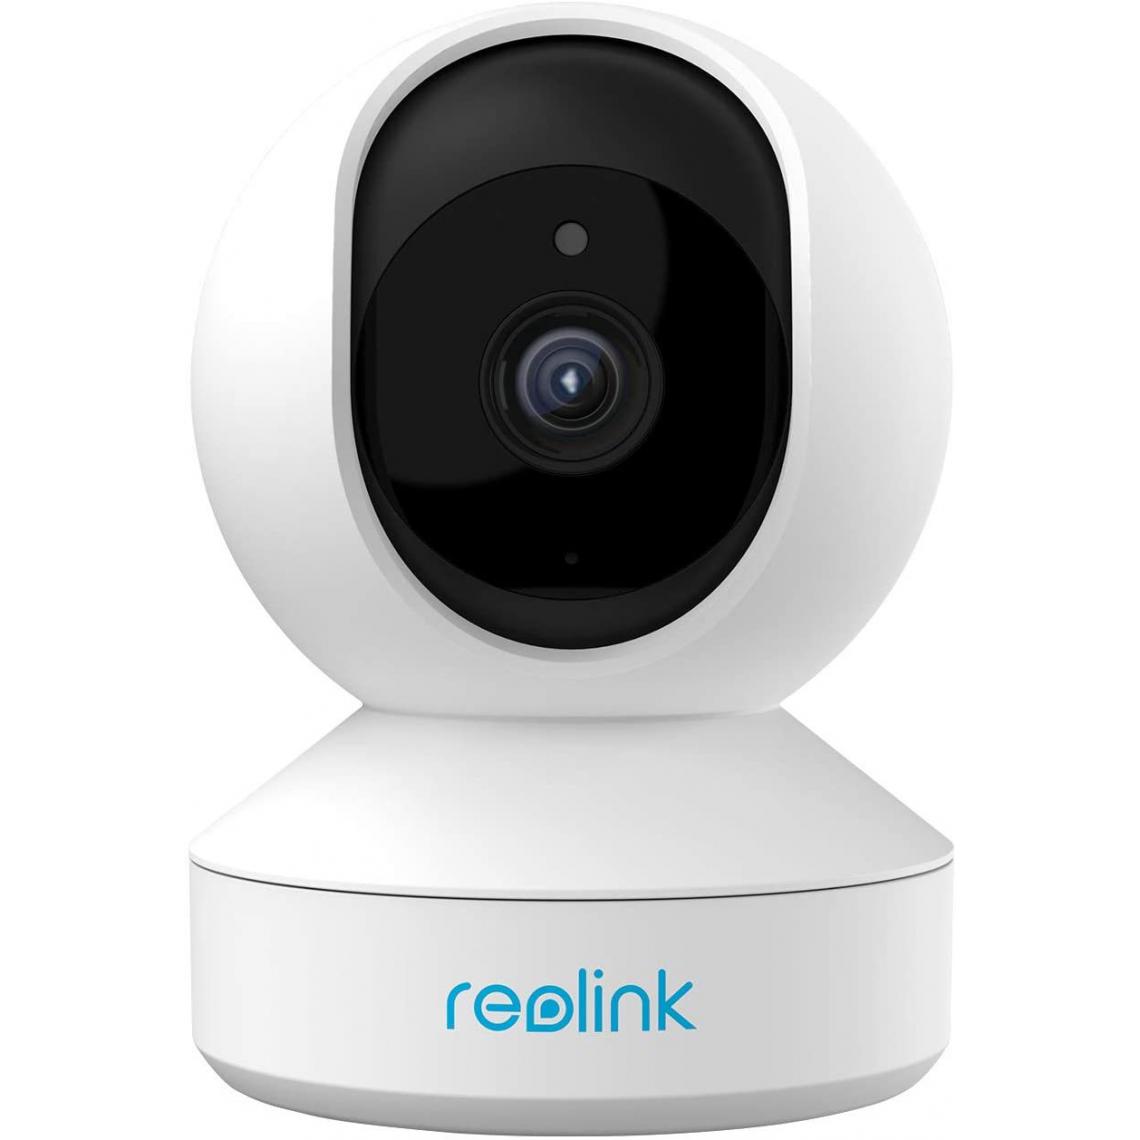 Reolink - 4MP Caméra Surveillance Interieure - E1 Pro- Caméra Pan & Tilt WiFi CCTV Caméra IP Audio Bidirectionnel, Détection de Mouvement pour maison - Caméra de surveillance connectée